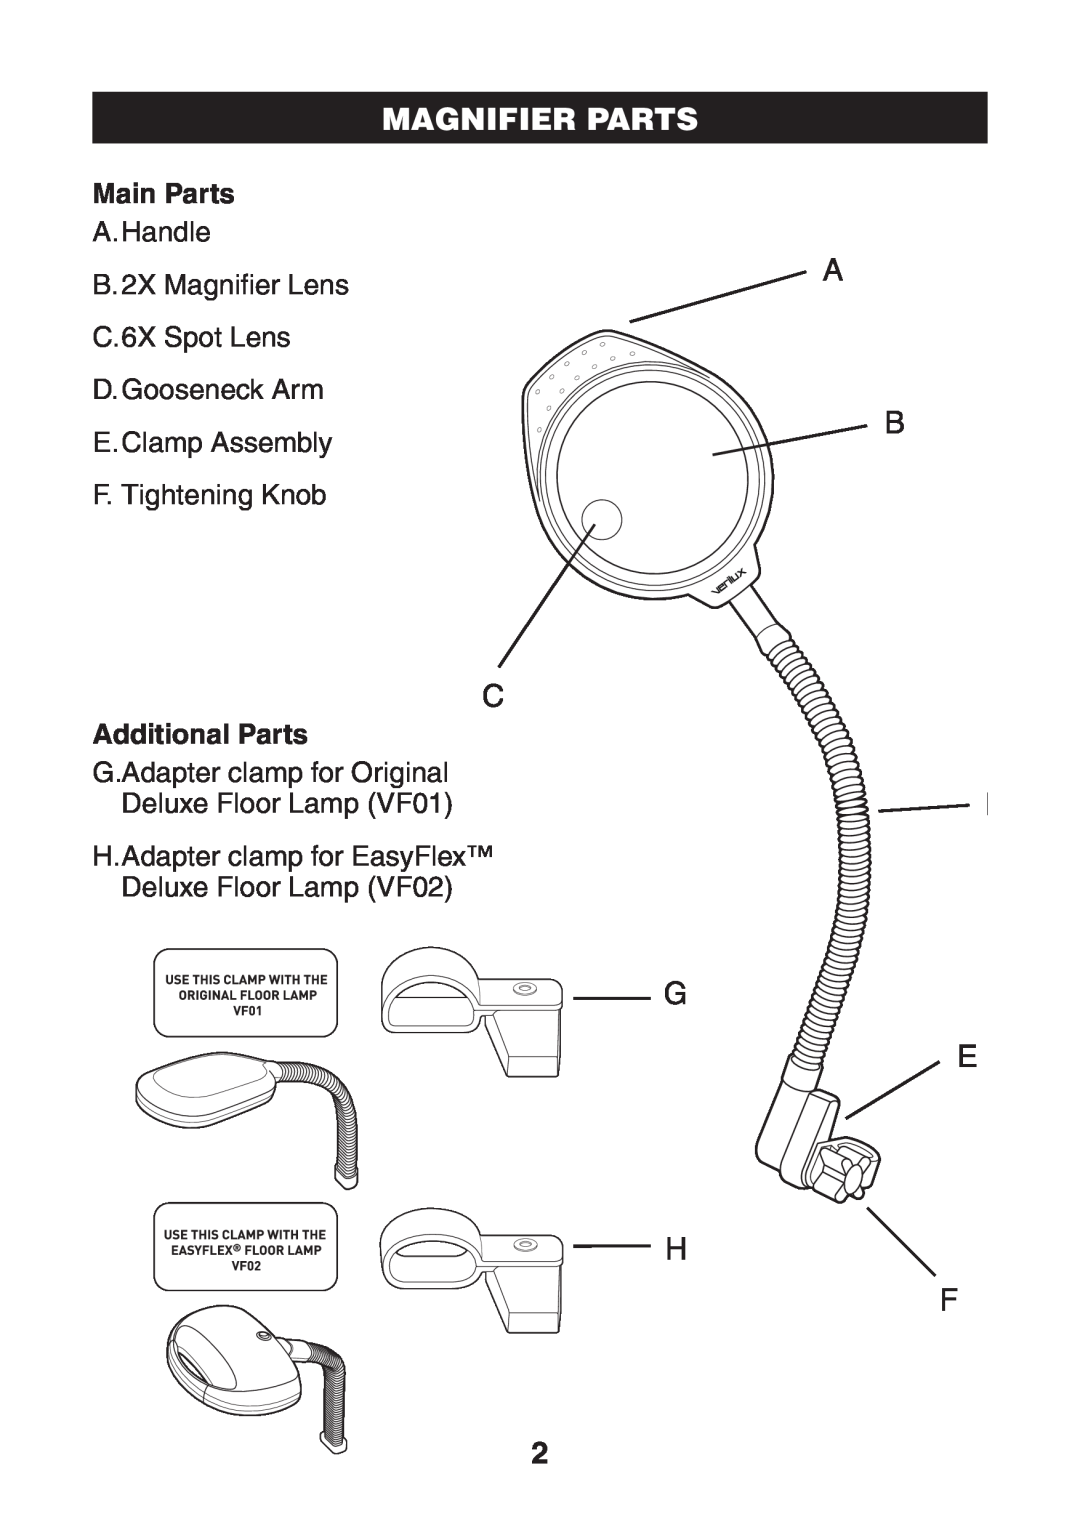 Verilux VM01 manual Magnifier Parts, Main Parts, Additional Parts 